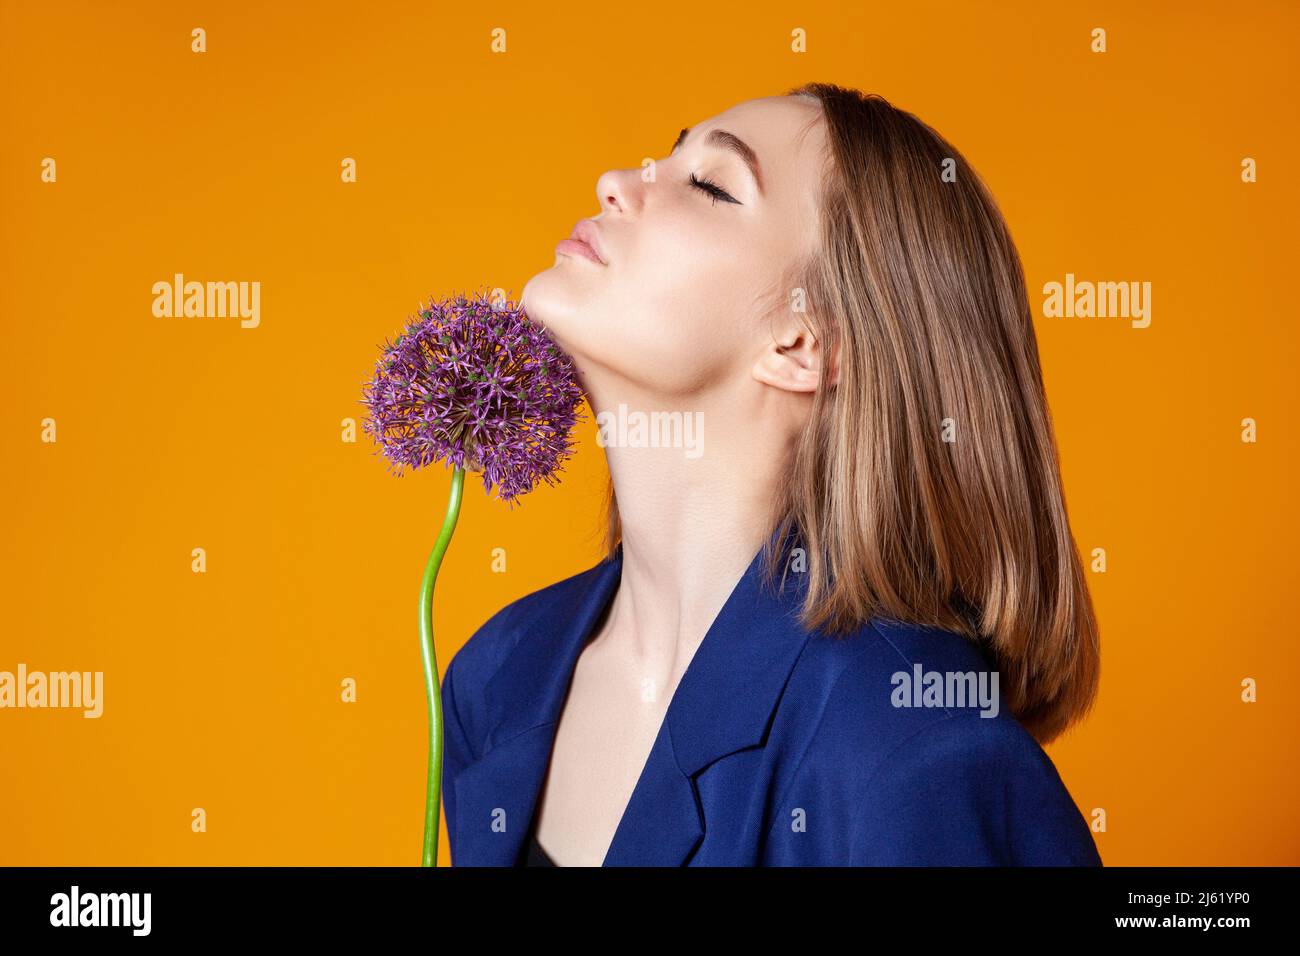 Jeune femme avec les yeux fermés touchant allium sur le menton contre la couleur orange Banque D'Images